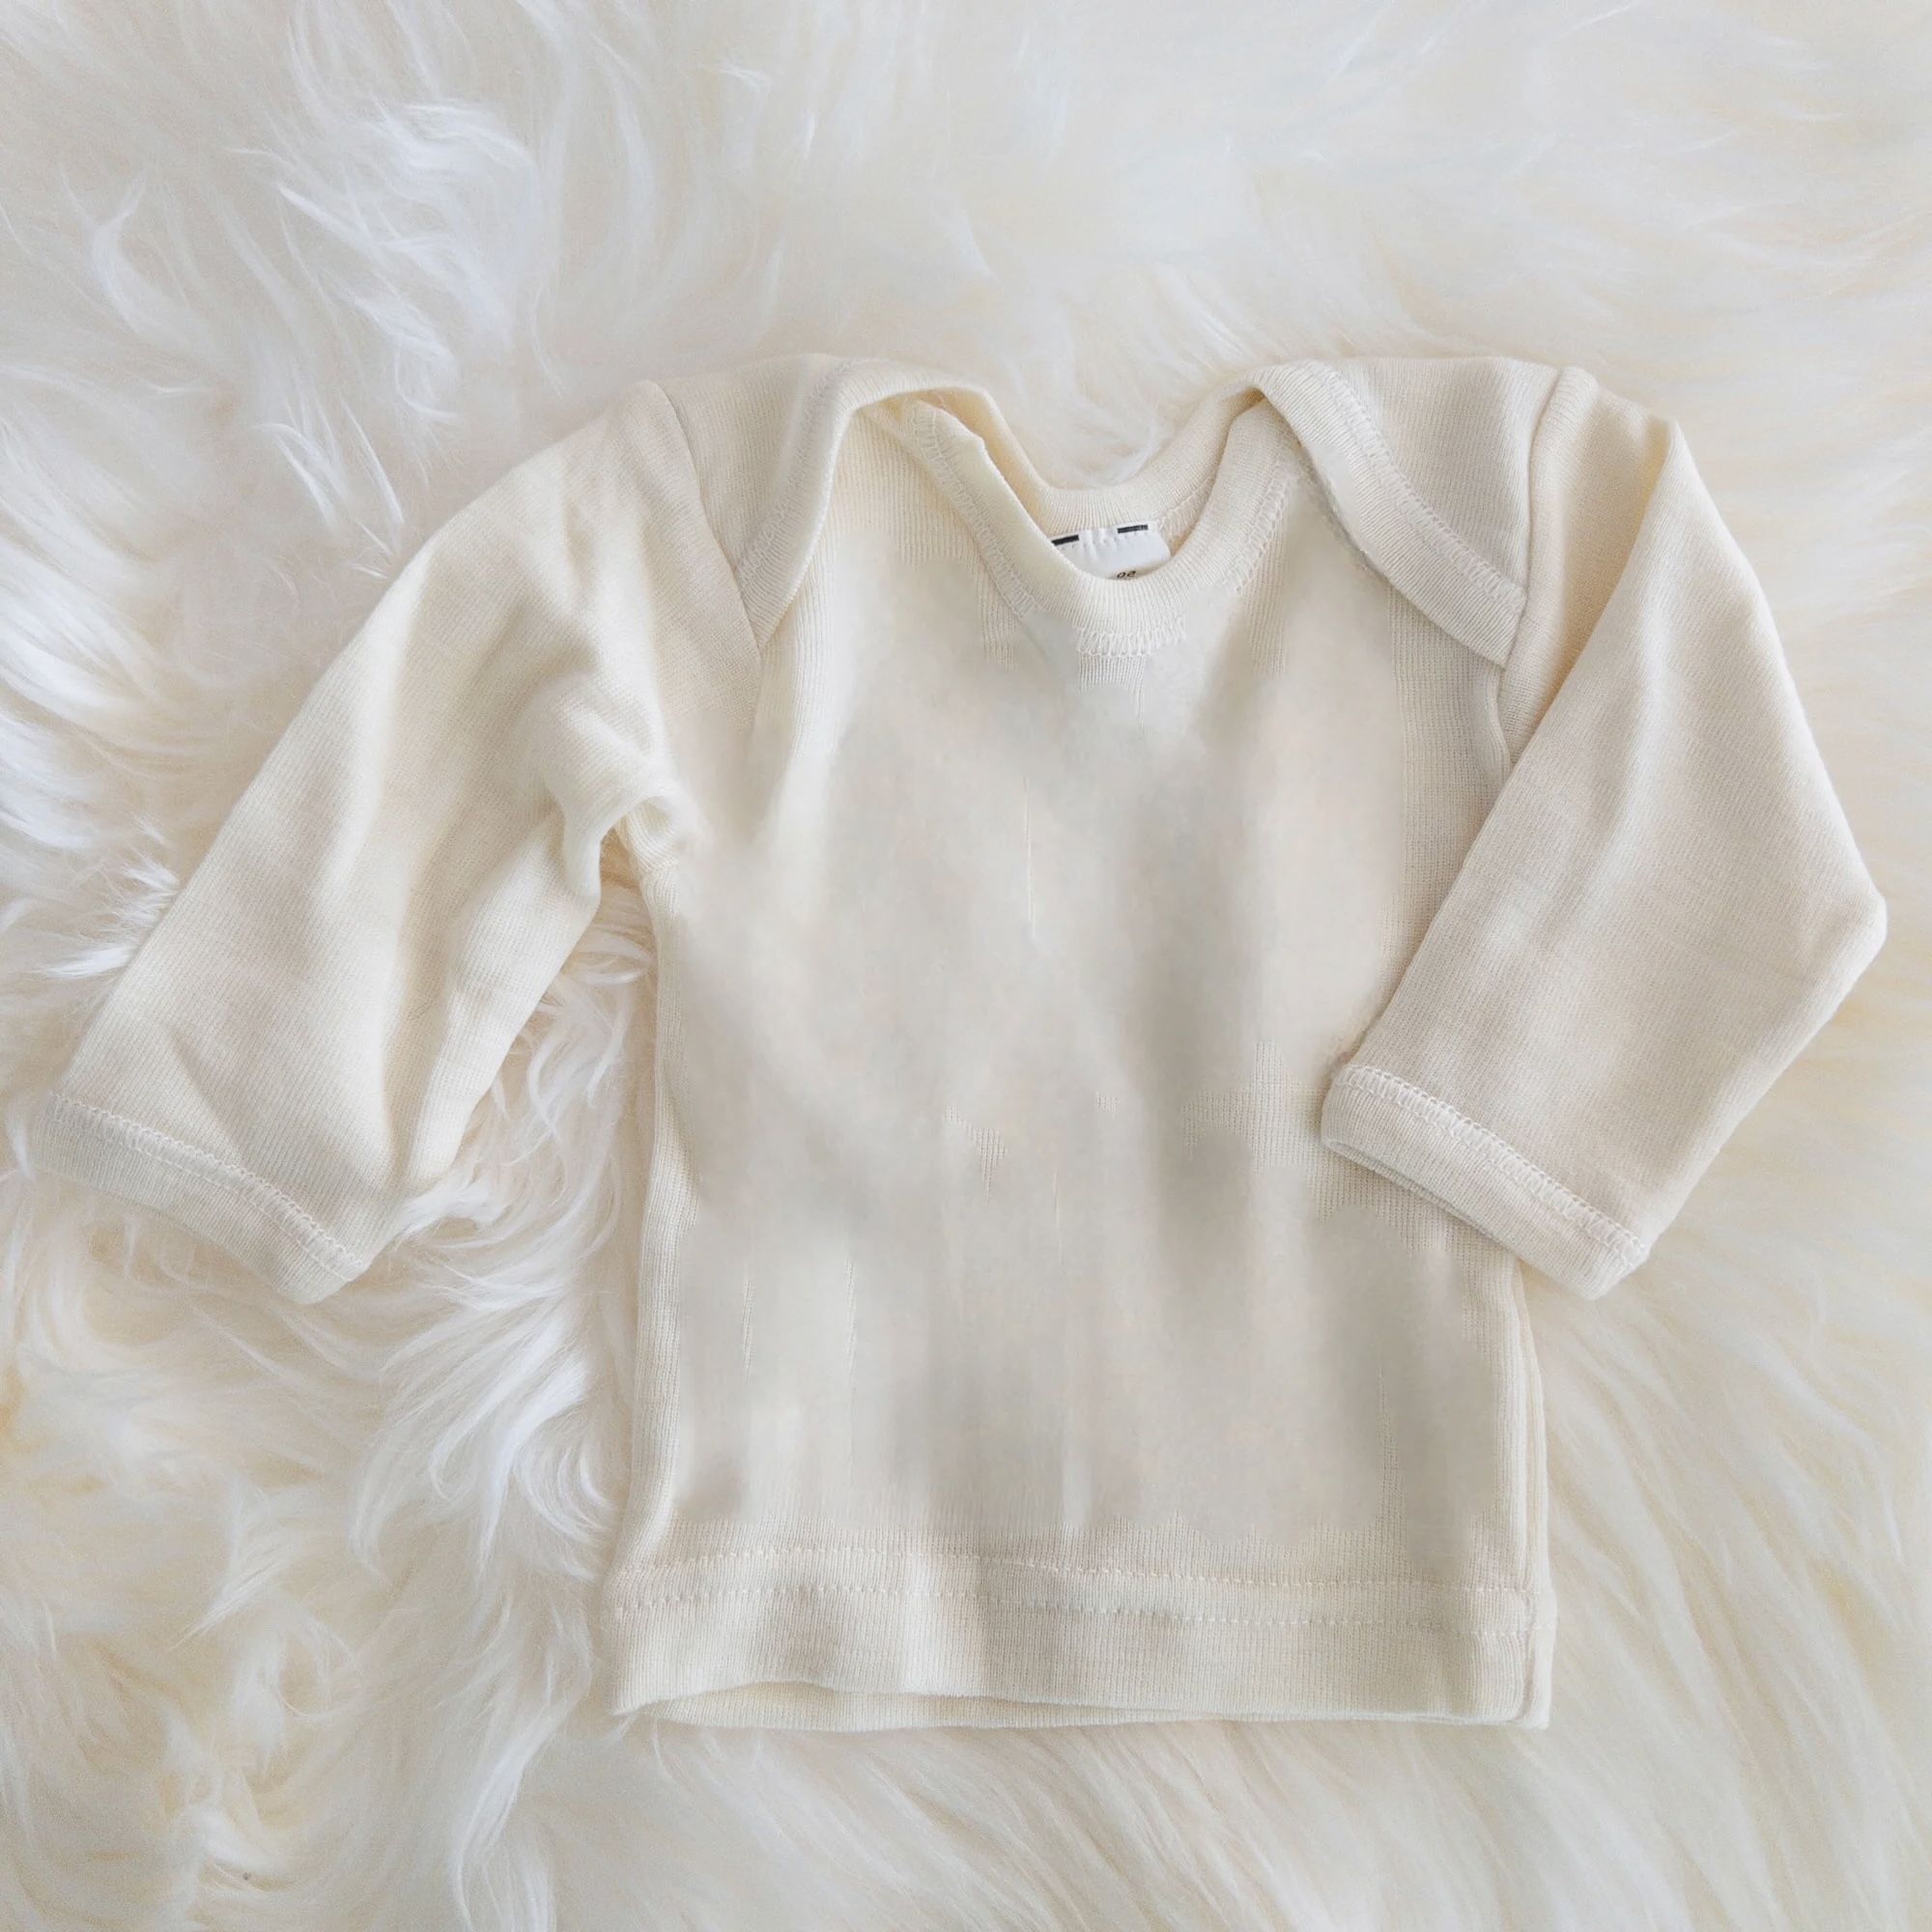 Hocosa baby shirt long-sleeve, wool/silk